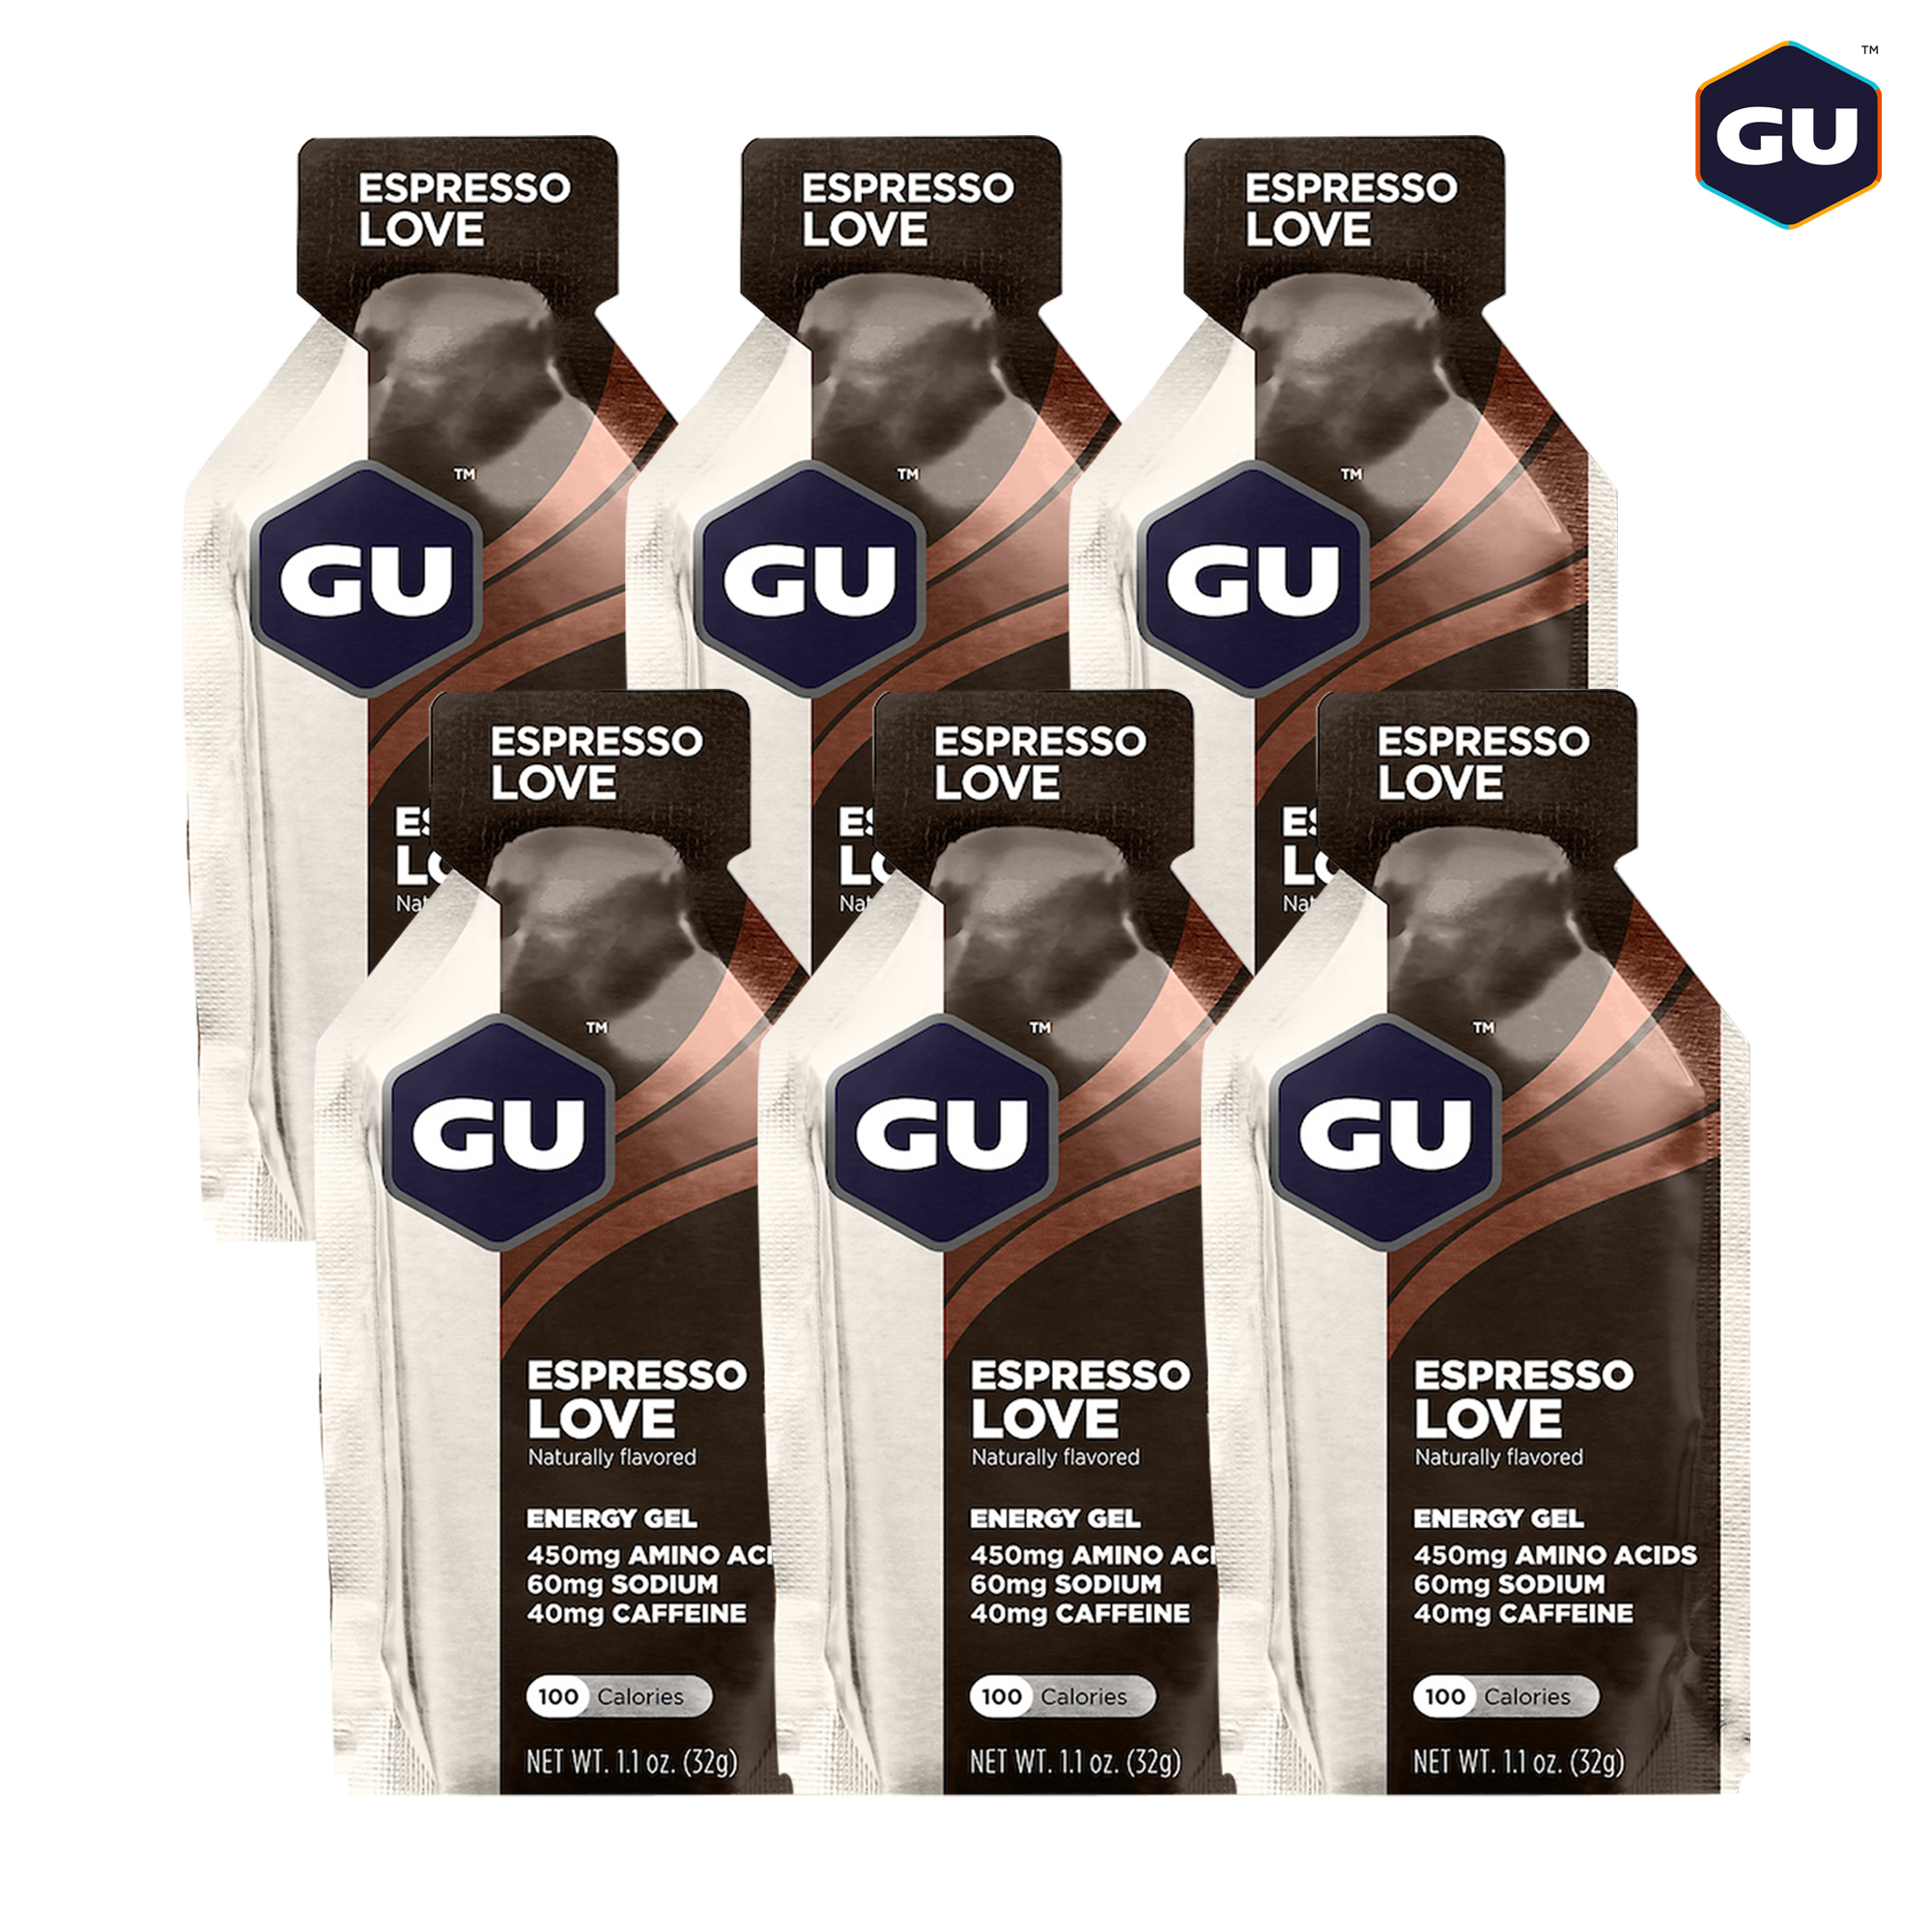 GU Energy Gel Năng Lượng Chạy Bộ Vị Espresso Love - Hương Cà Phê Tình Yêu - Combo 6 Gói